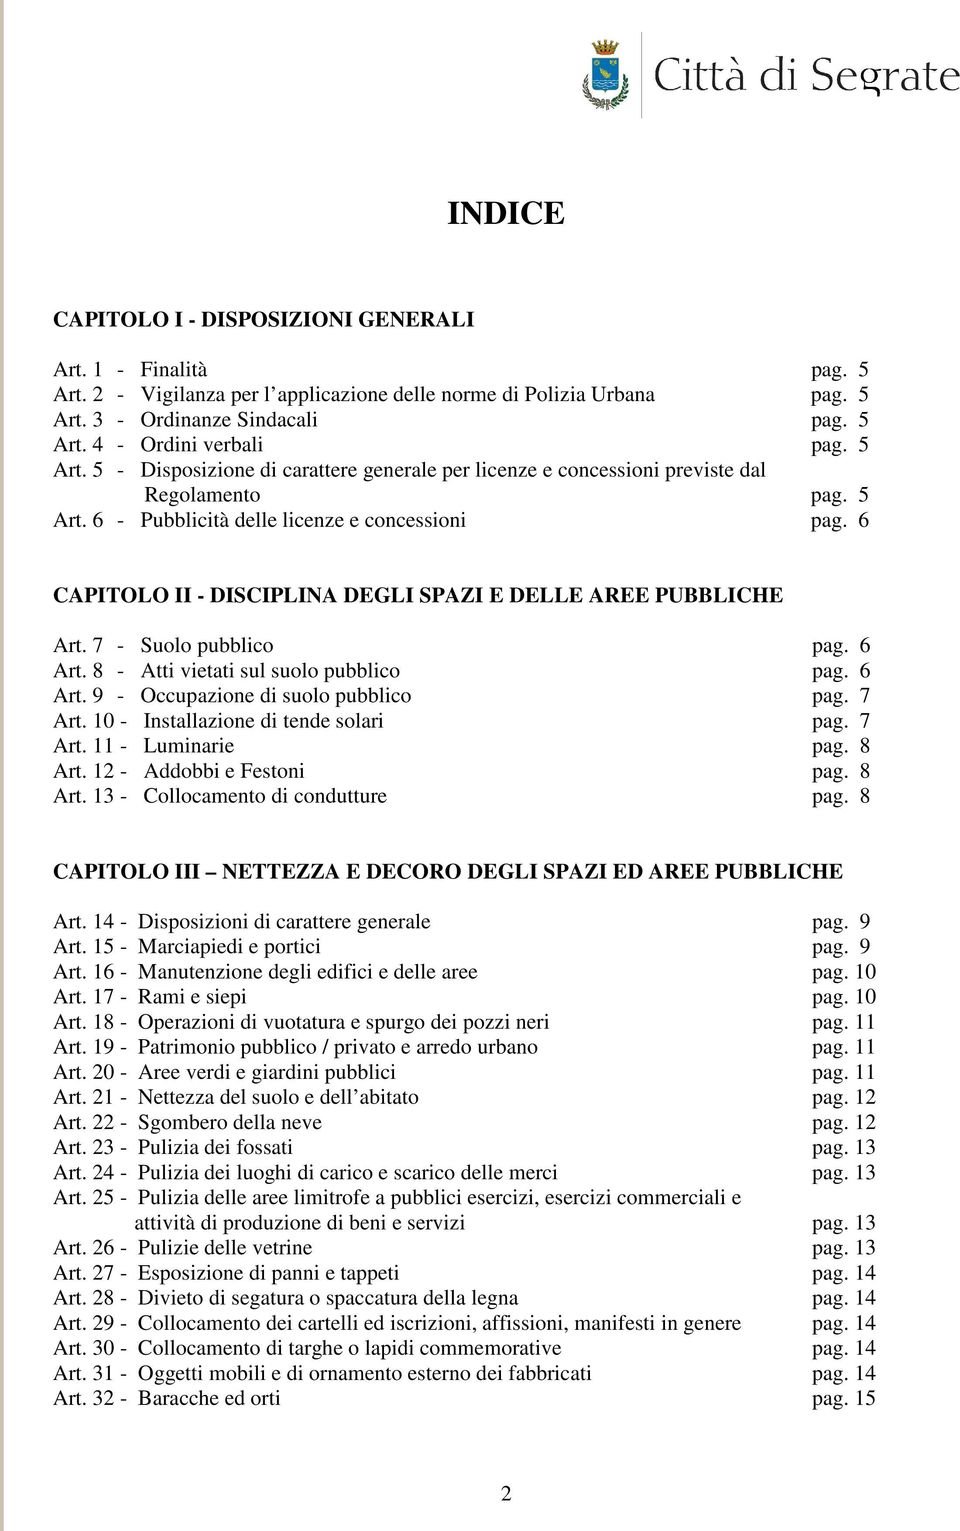 6 CAPITOLO II - DISCIPLINA DEGLI SPAZI E DELLE AREE PUBBLICHE Art. 7 - Suolo pubblico pag. 6 Art. 8 - Atti vietati sul suolo pubblico pag. 6 Art. 9 - Occupazione di suolo pubblico pag. 7 Art.